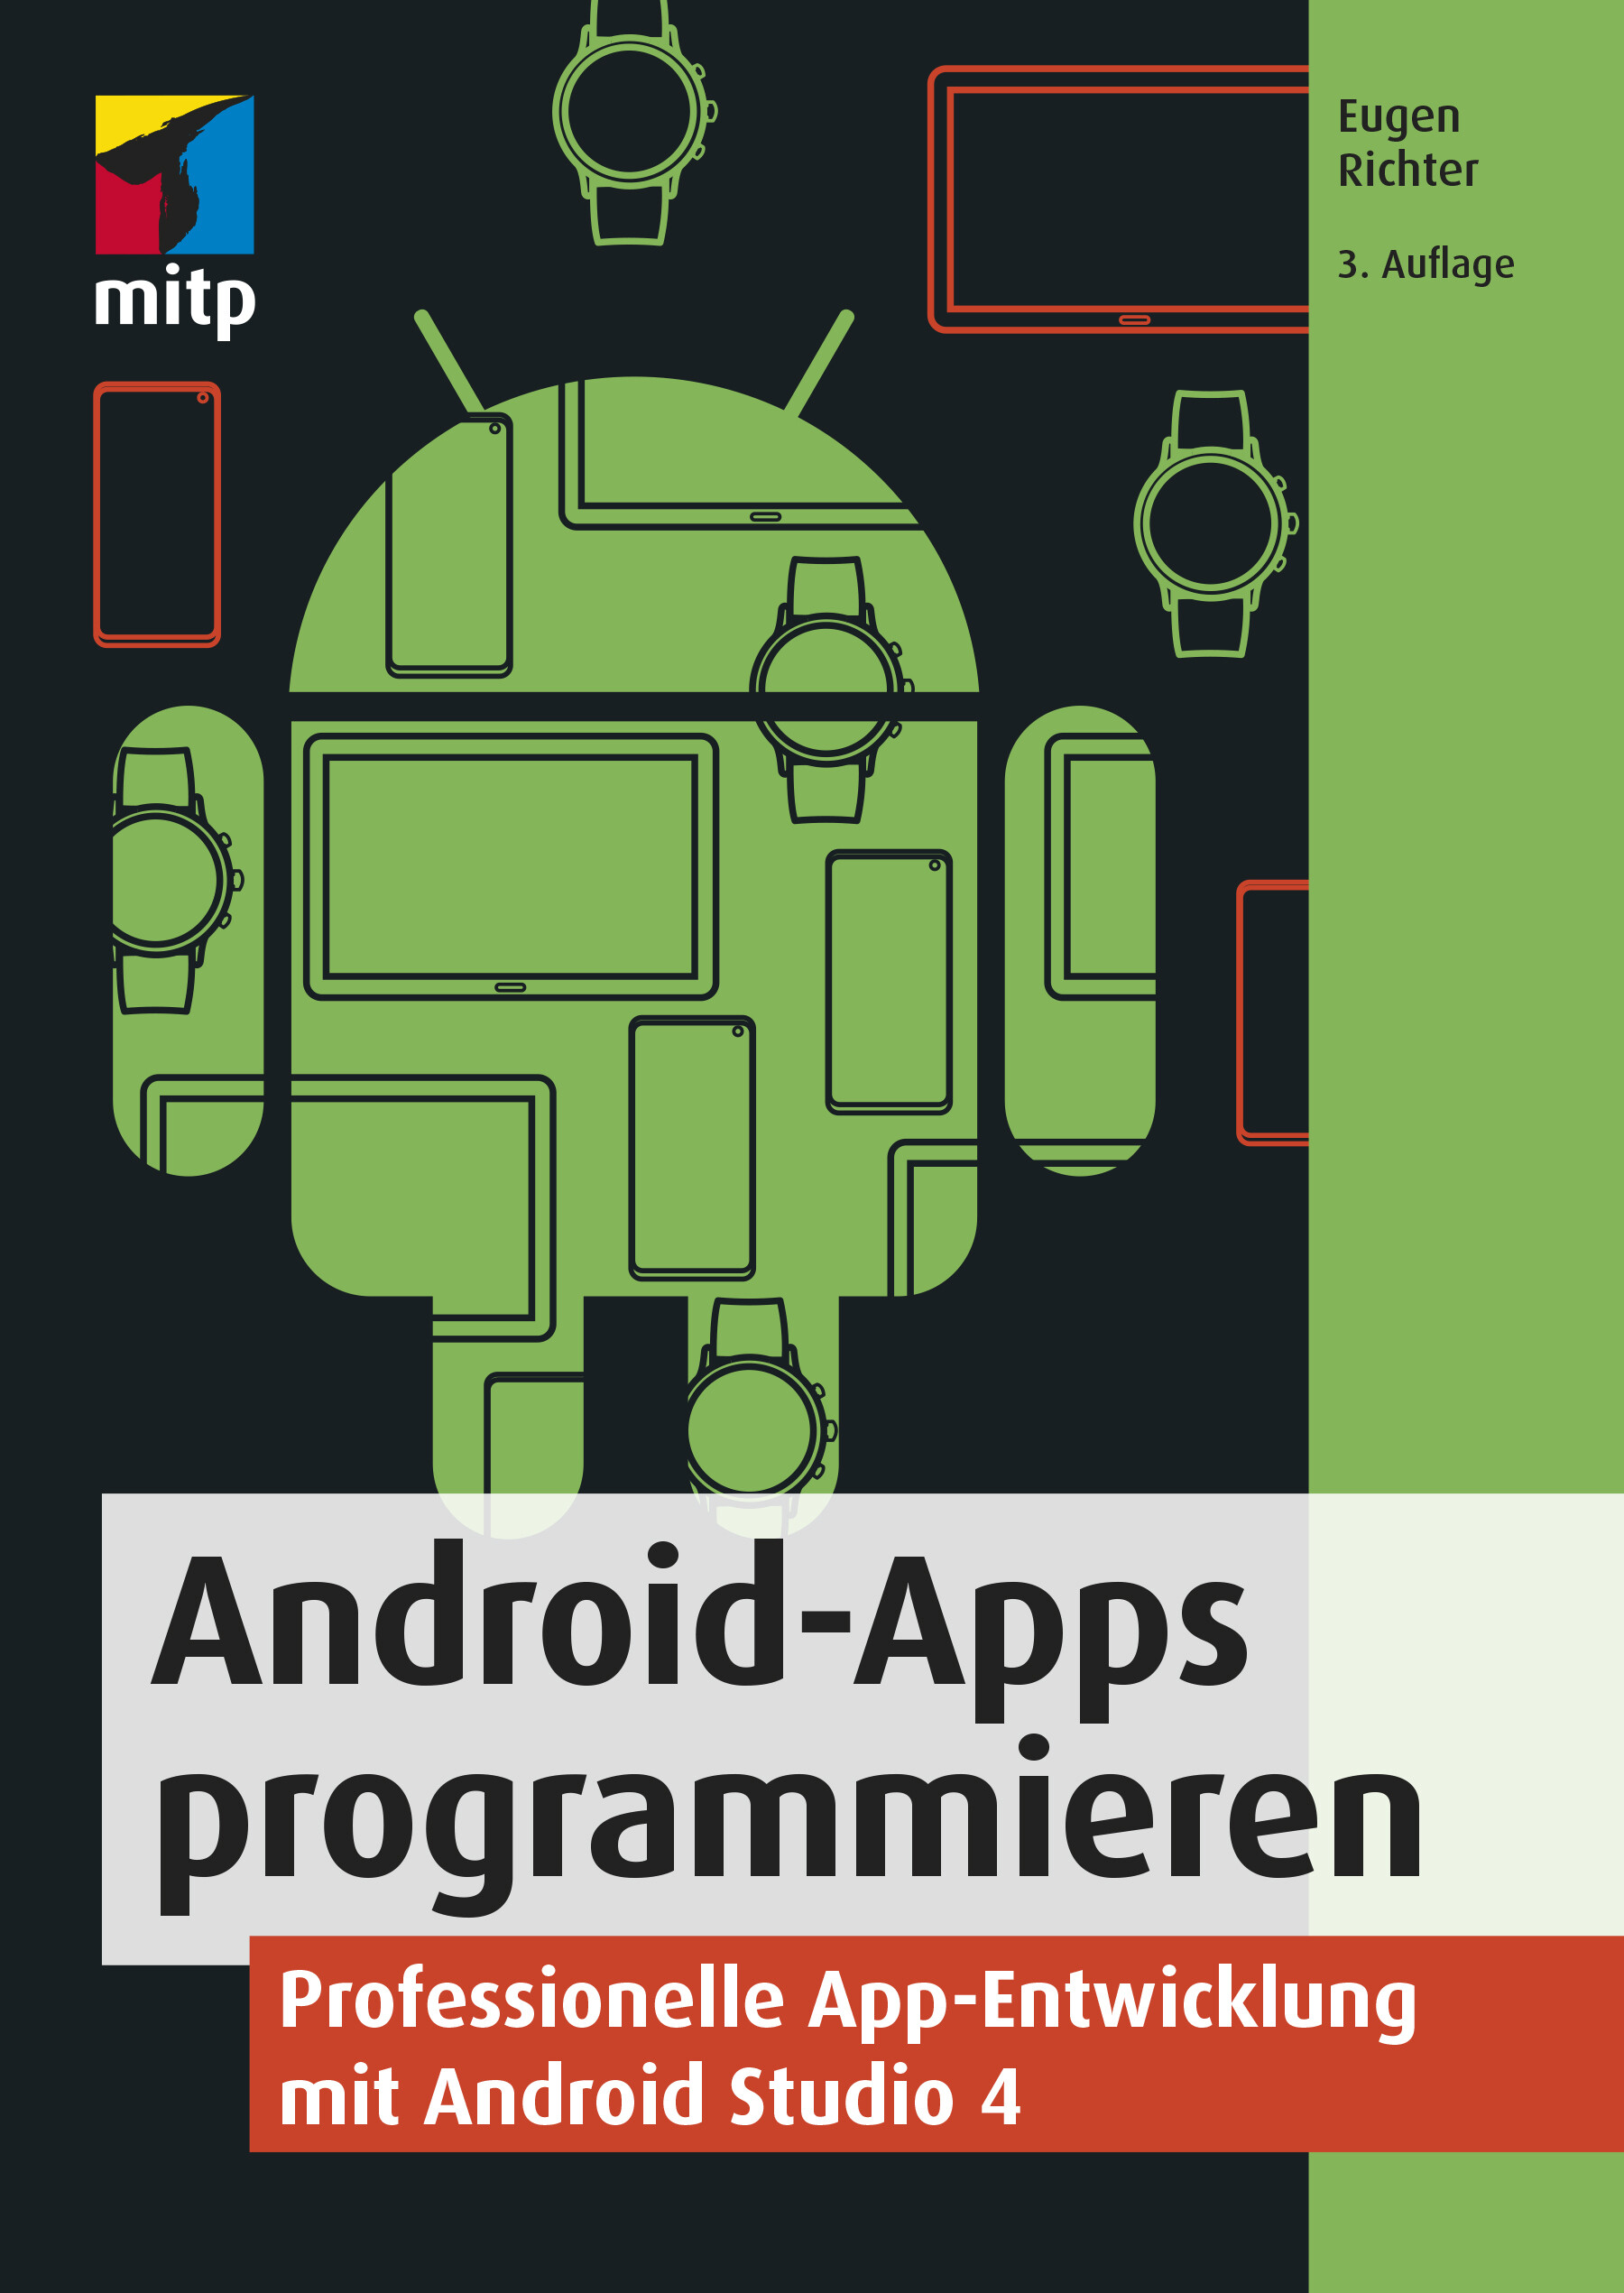 Android-Apps programmieren (3. Auflg.)